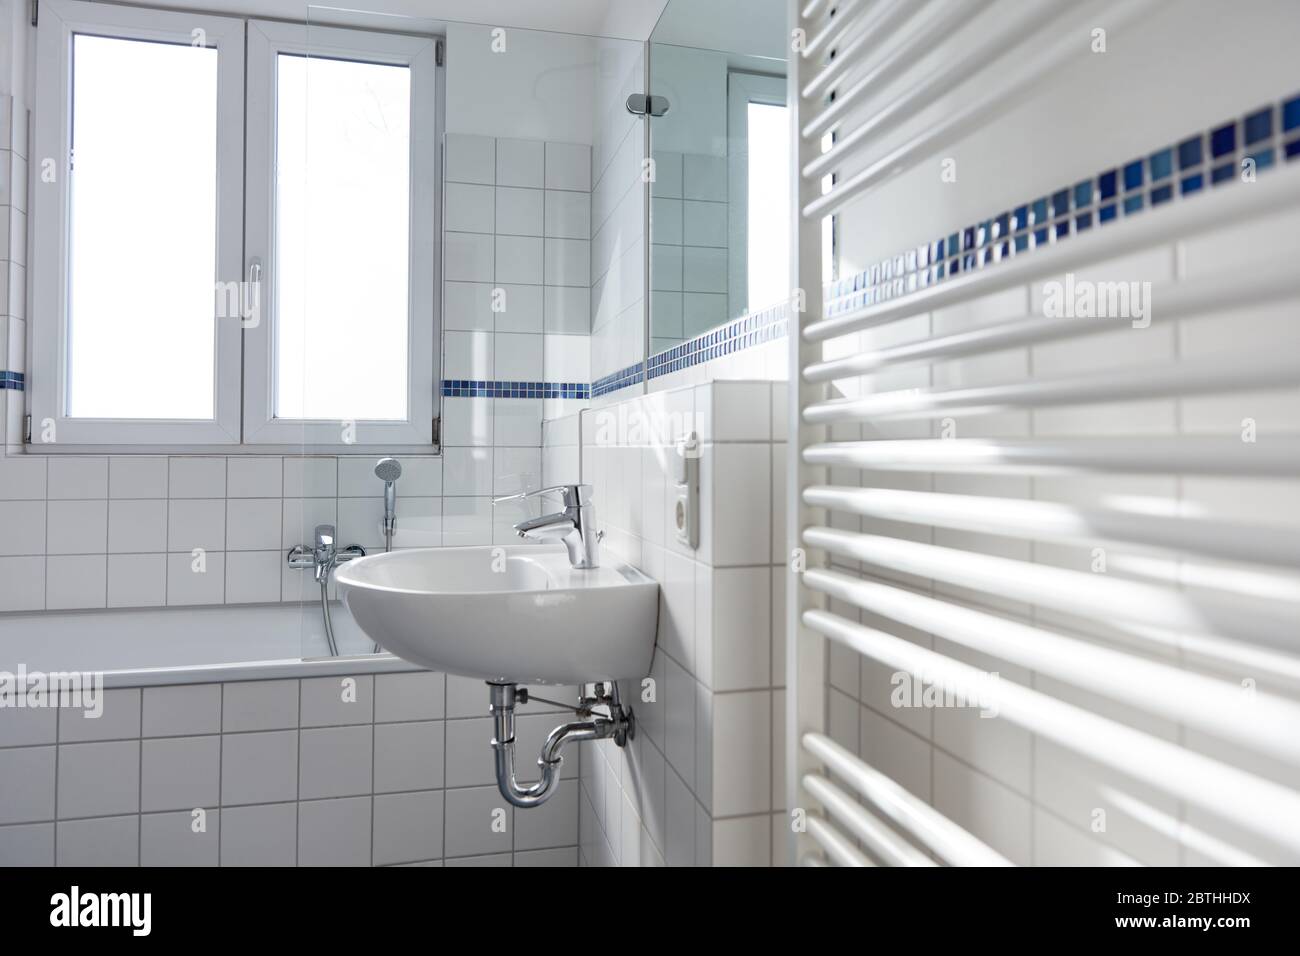 Lavabo in ceramica bianca in bagno luminoso con radiatore e finestra Foto Stock